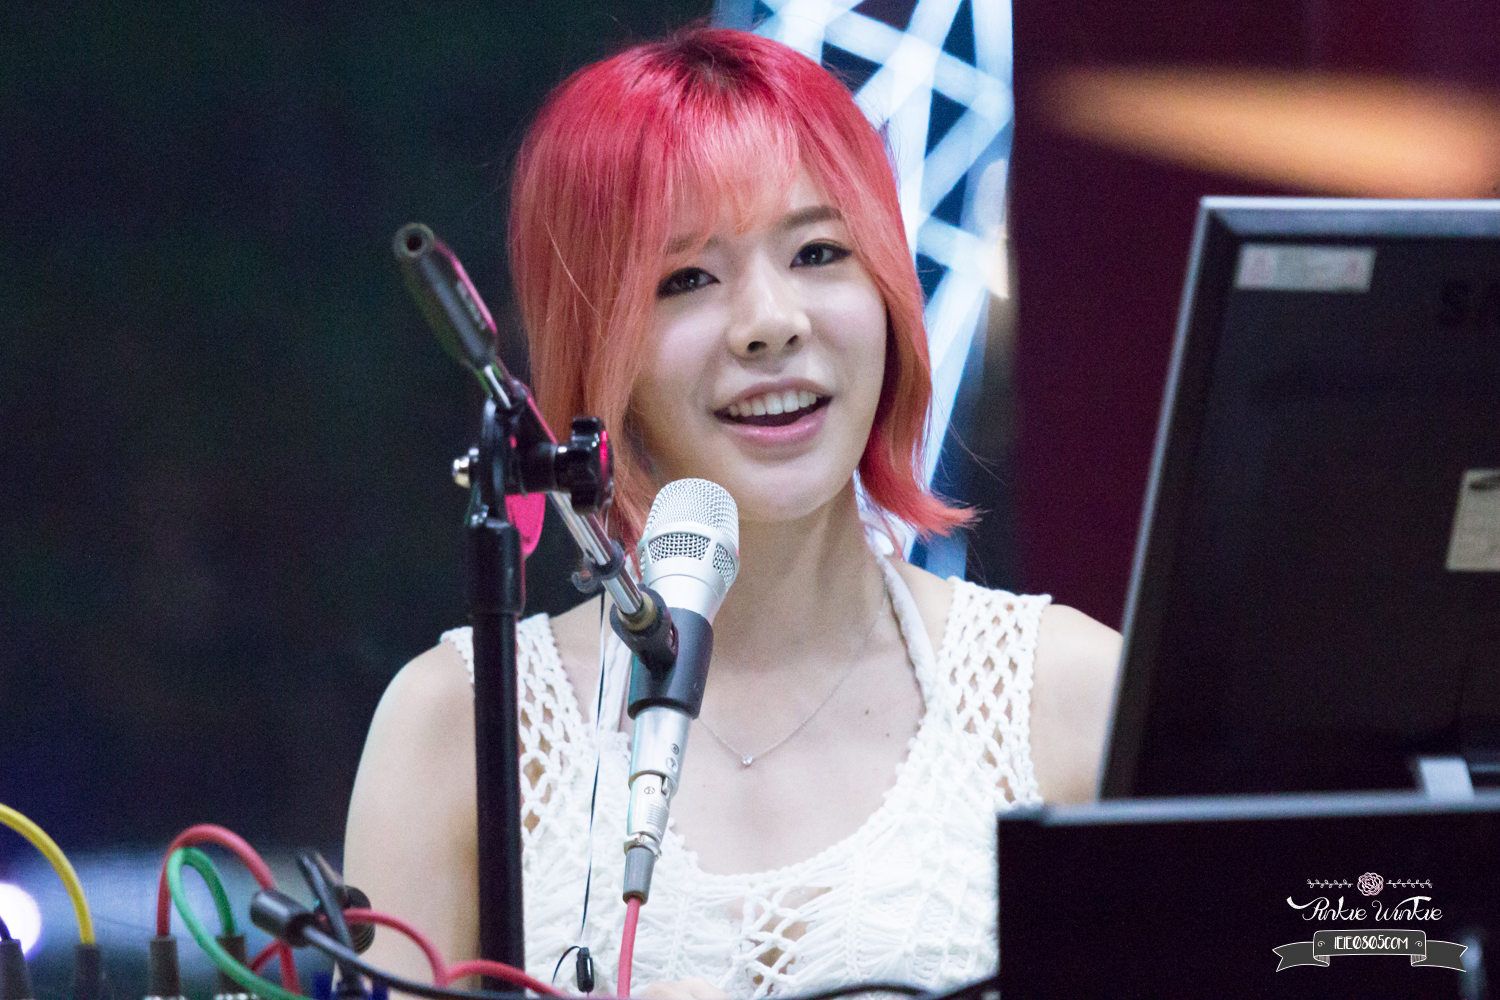 [OTHER][06-02-2015]Hình ảnh mới nhất từ DJ Sunny tại Radio MBC FM4U - "FM Date" - Page 32 29091123905_03fc4d840d_o